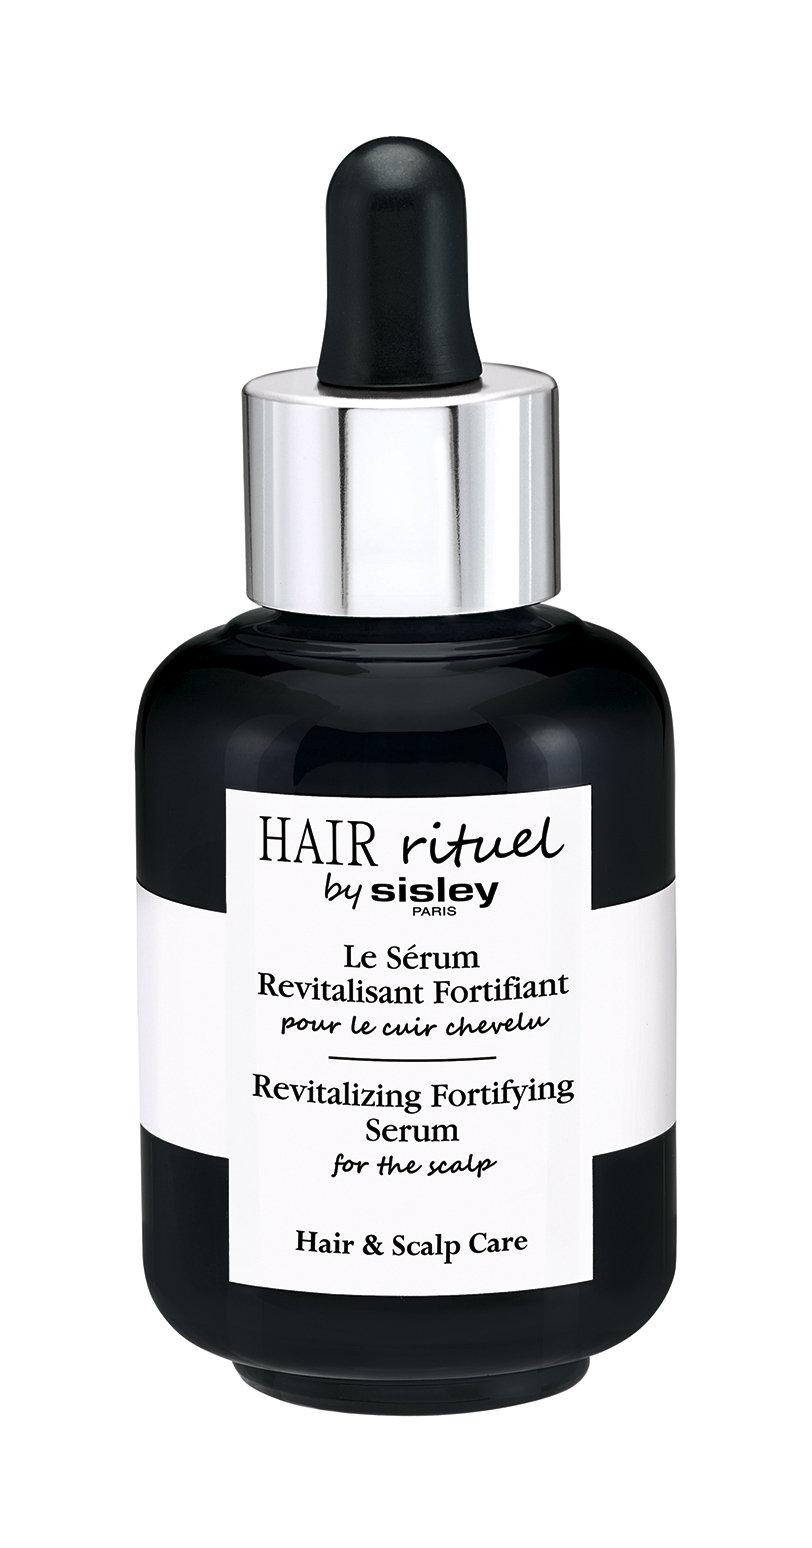 Сыворотка Sisley Hair Rituel тонизирующая и укрепляющая, для кожи головы, 60 мл